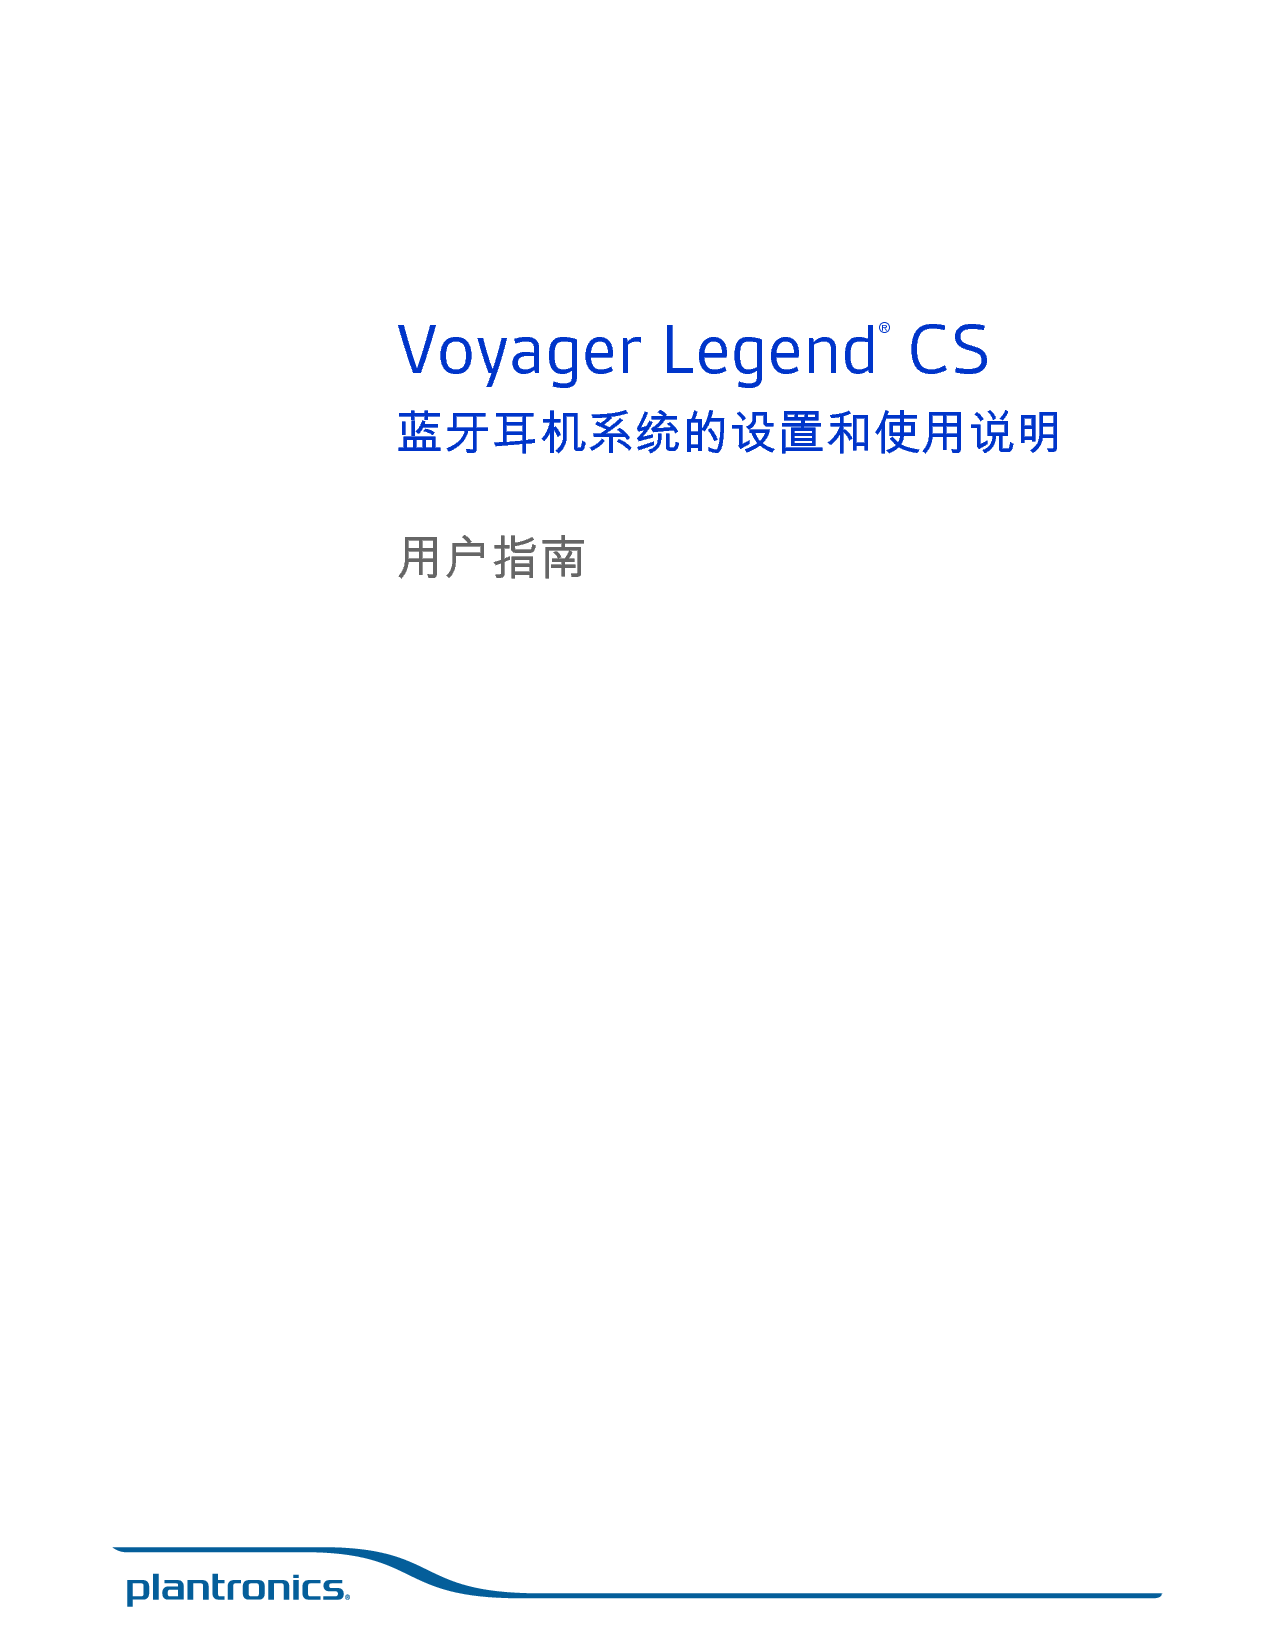 缤特力 Plantronics Voyager Legend CS 用户指南 封面